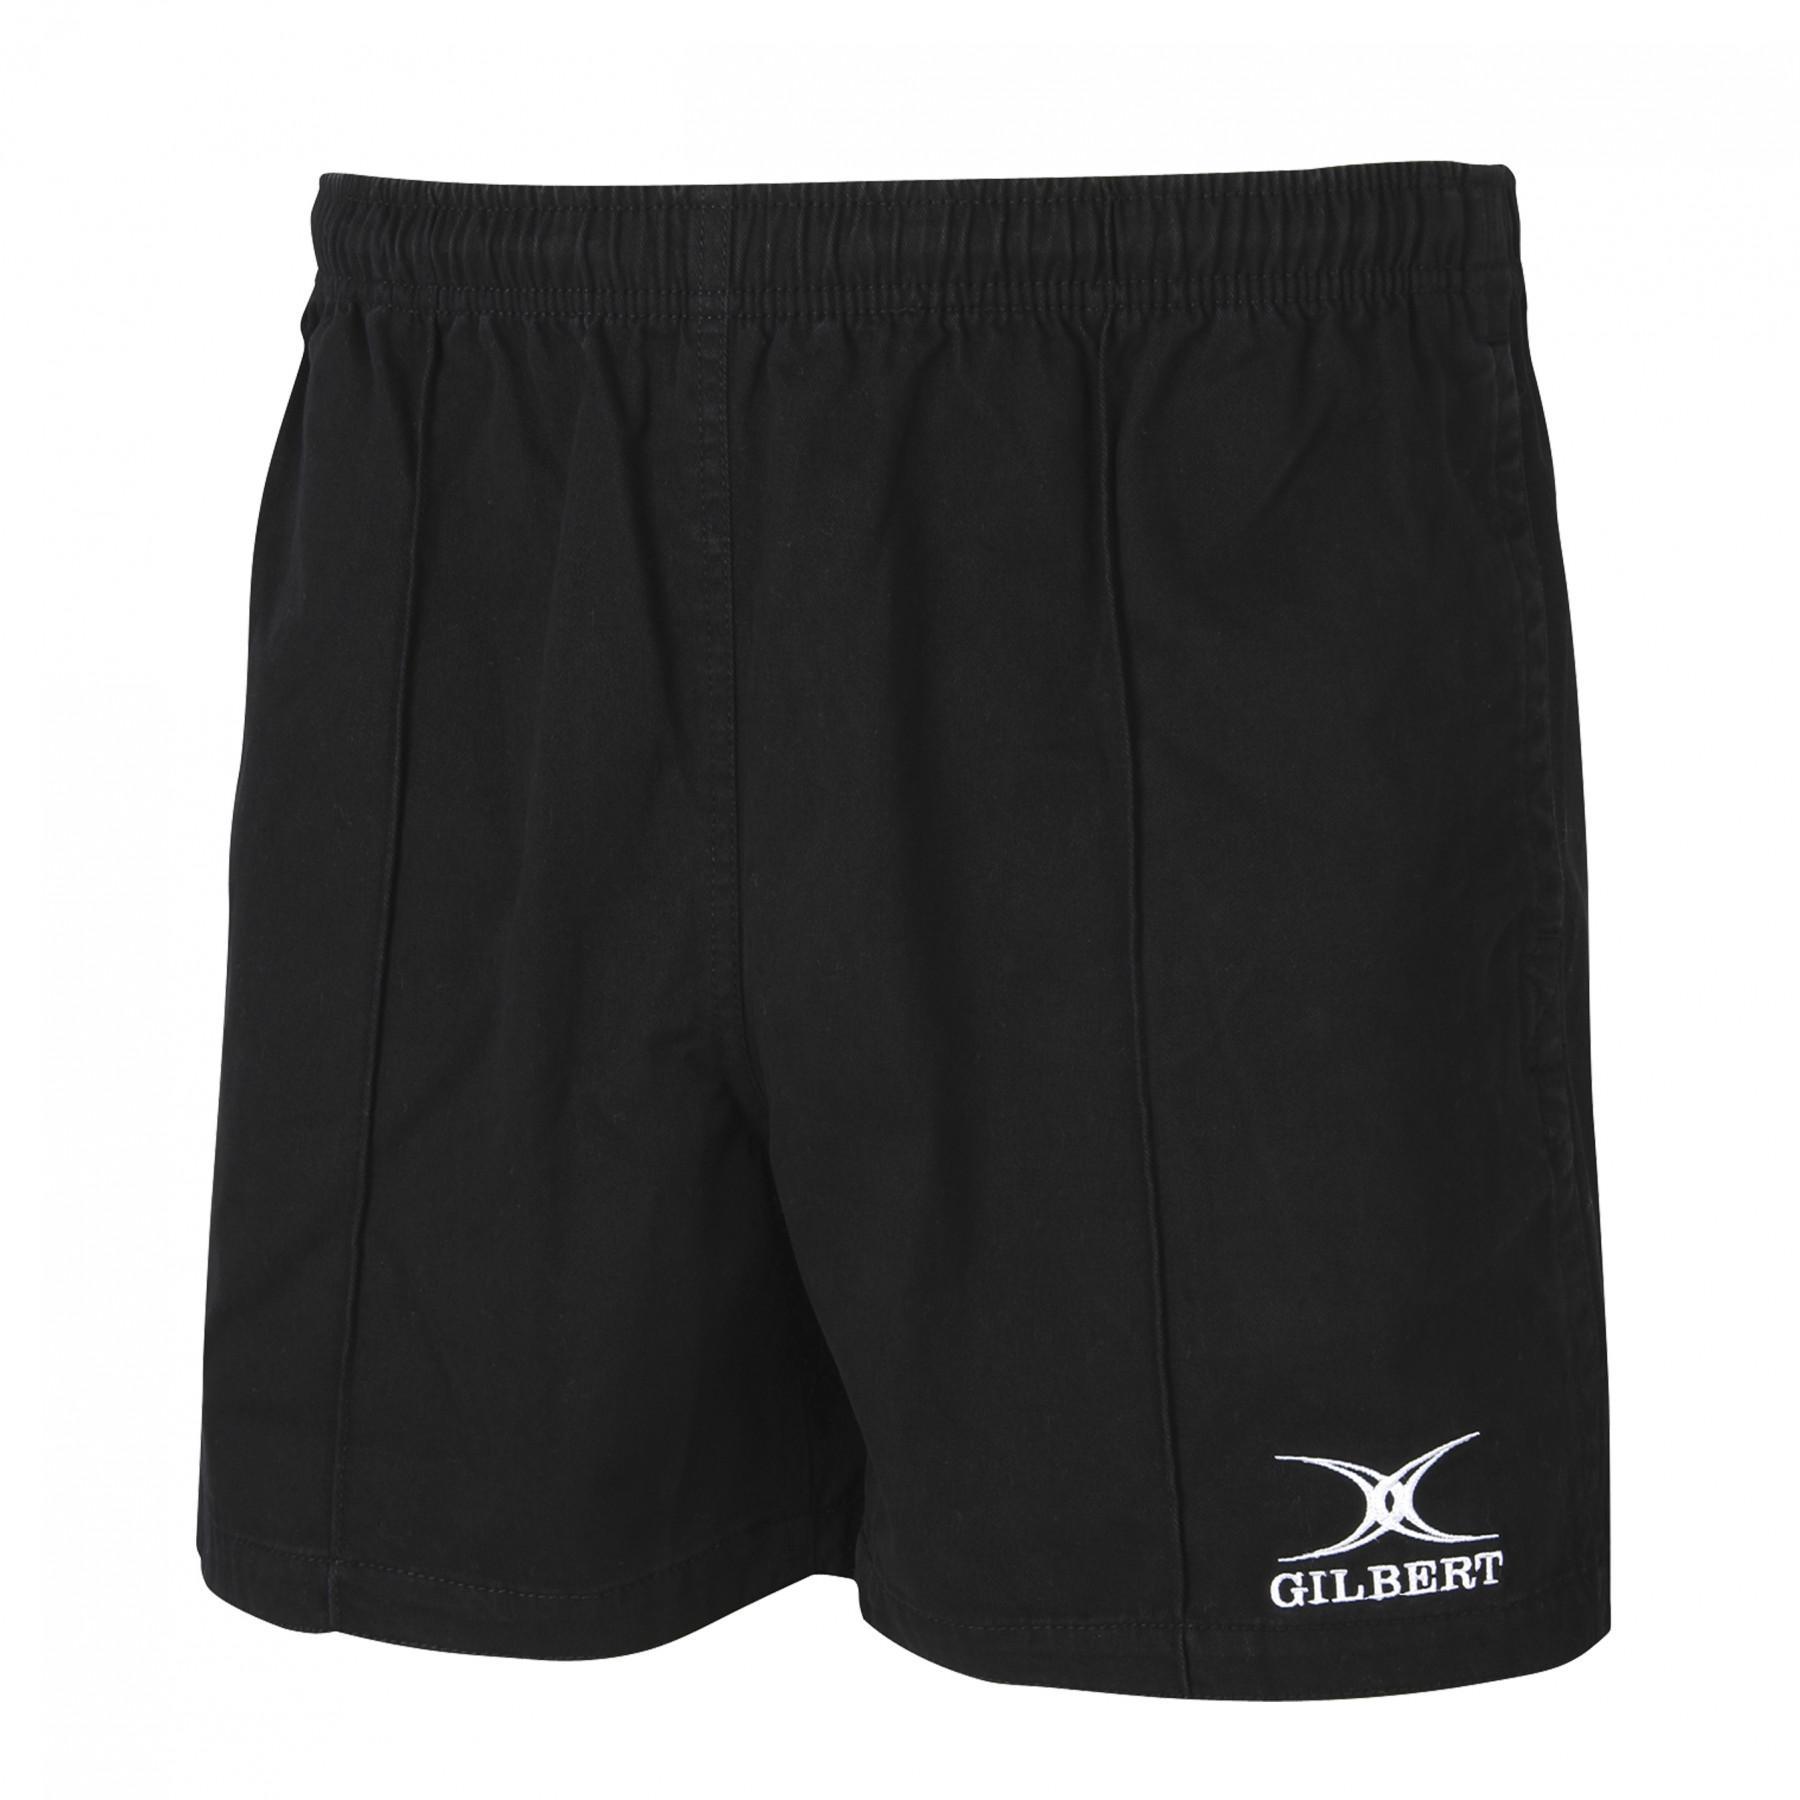 Children's shorts Gilbert Kiwi Pro